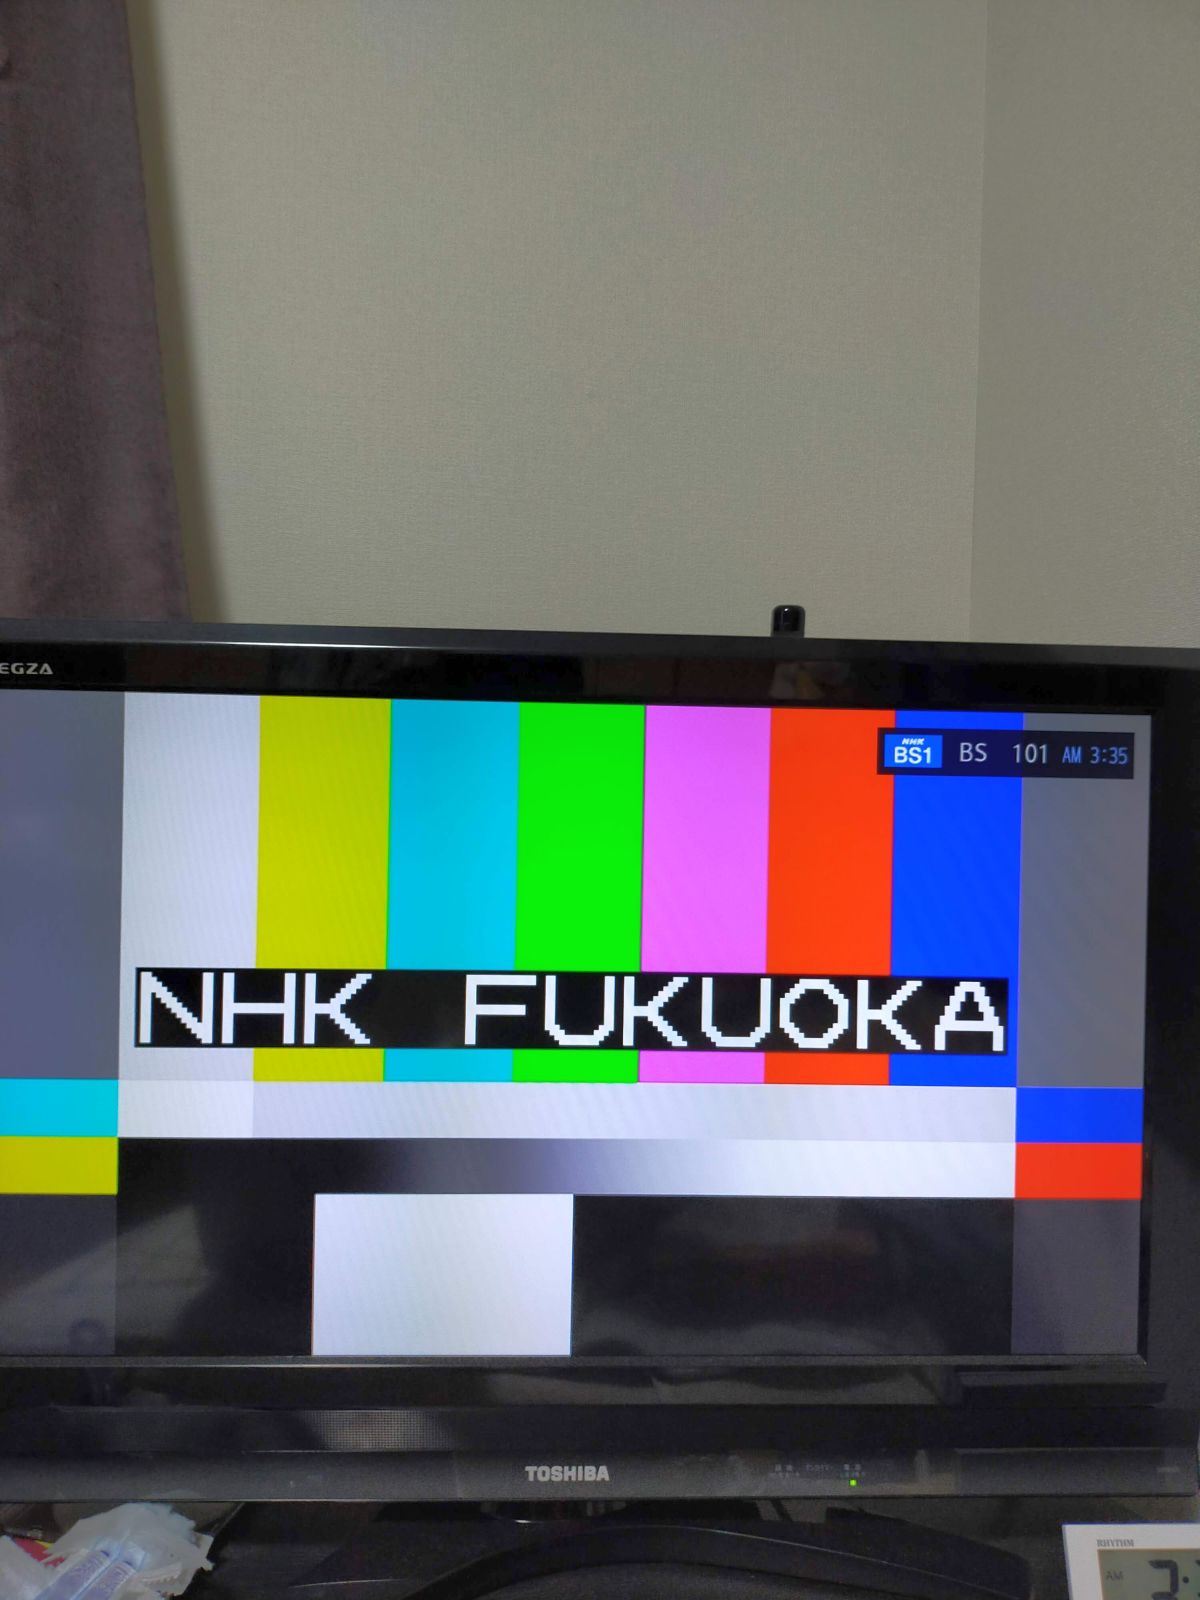 NHK FUKUOKA